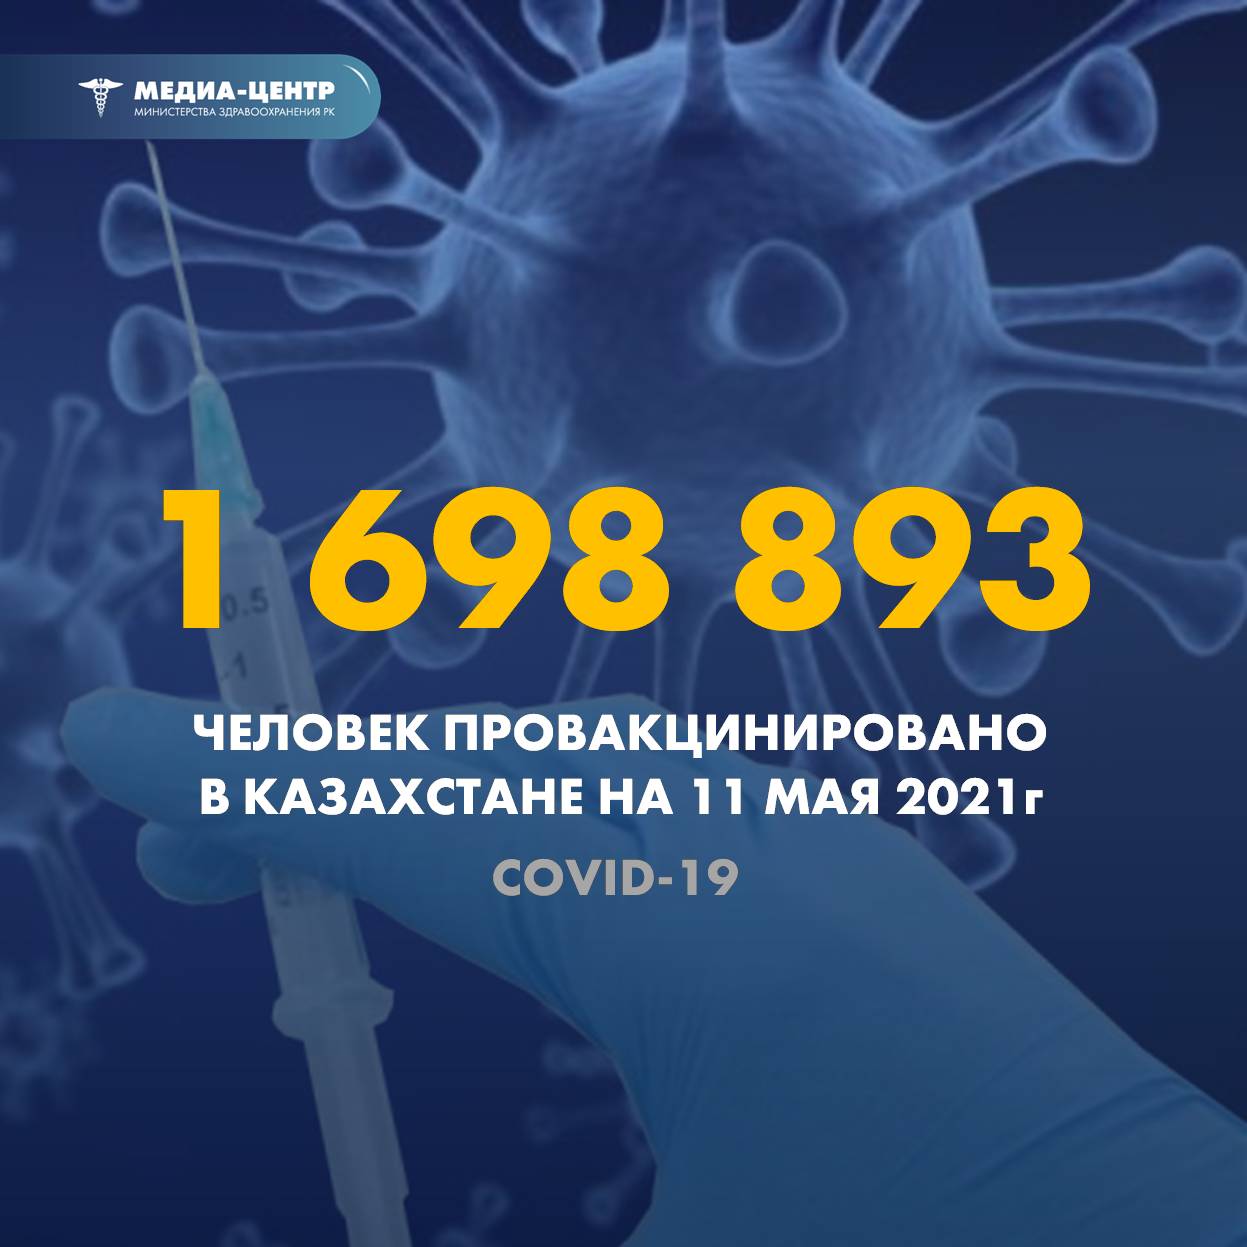 1 698 893 человек провакцинировано в Казахстане на 11 мая 2021 г